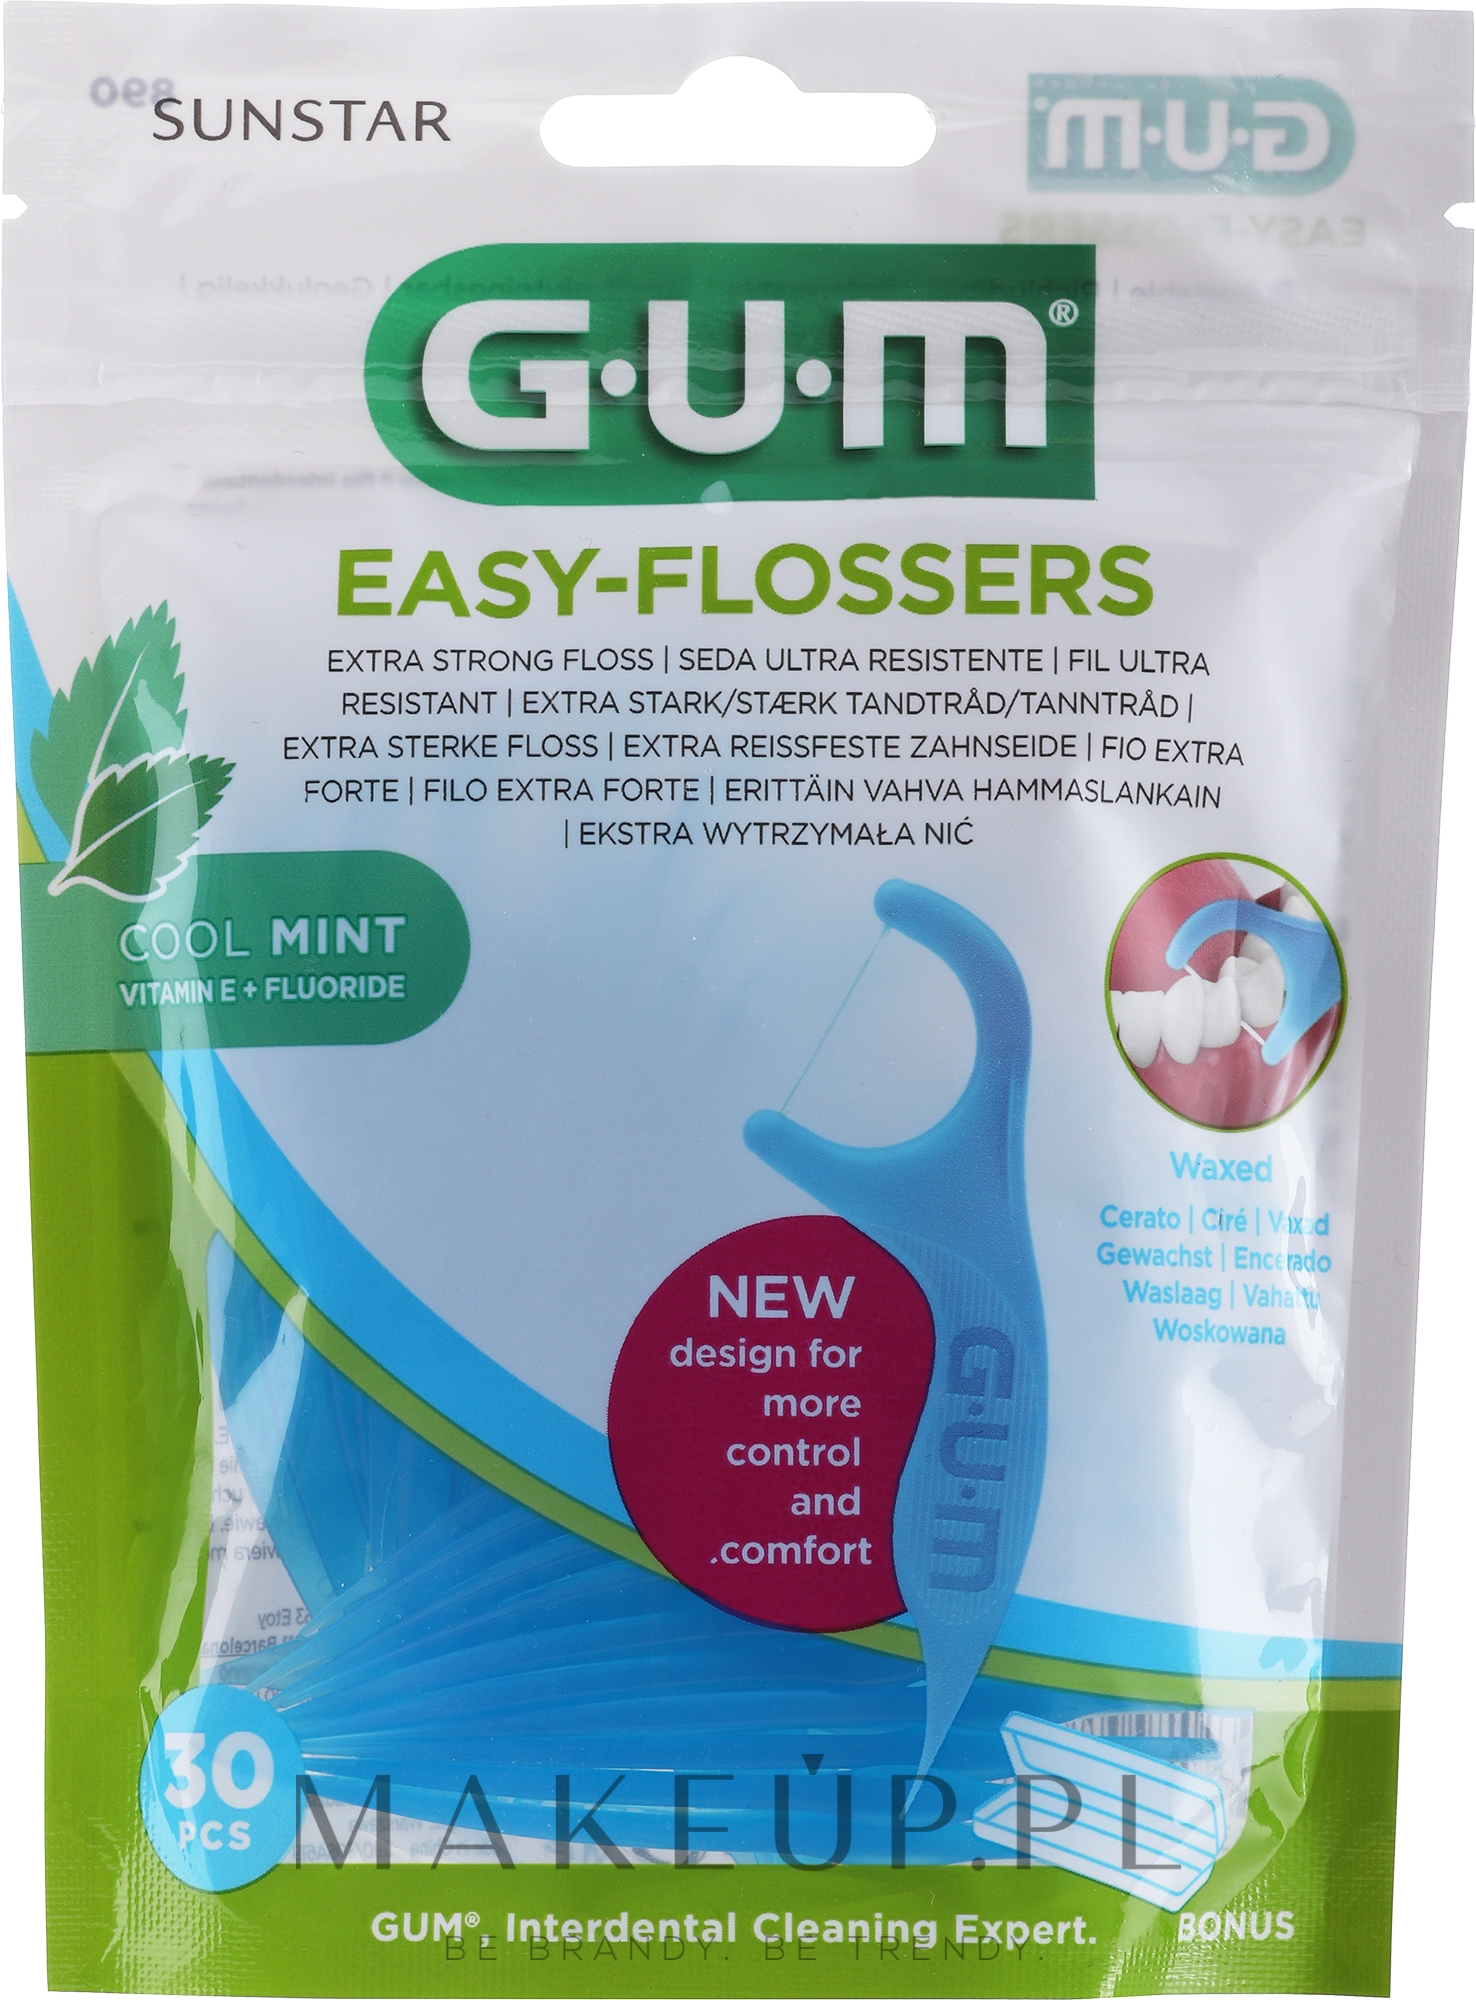 Nić dentystyczna z fluorem, 30 szt. - Sunstar Gum Easy Flossers Vitamin E — Zdjęcie 30 szt.